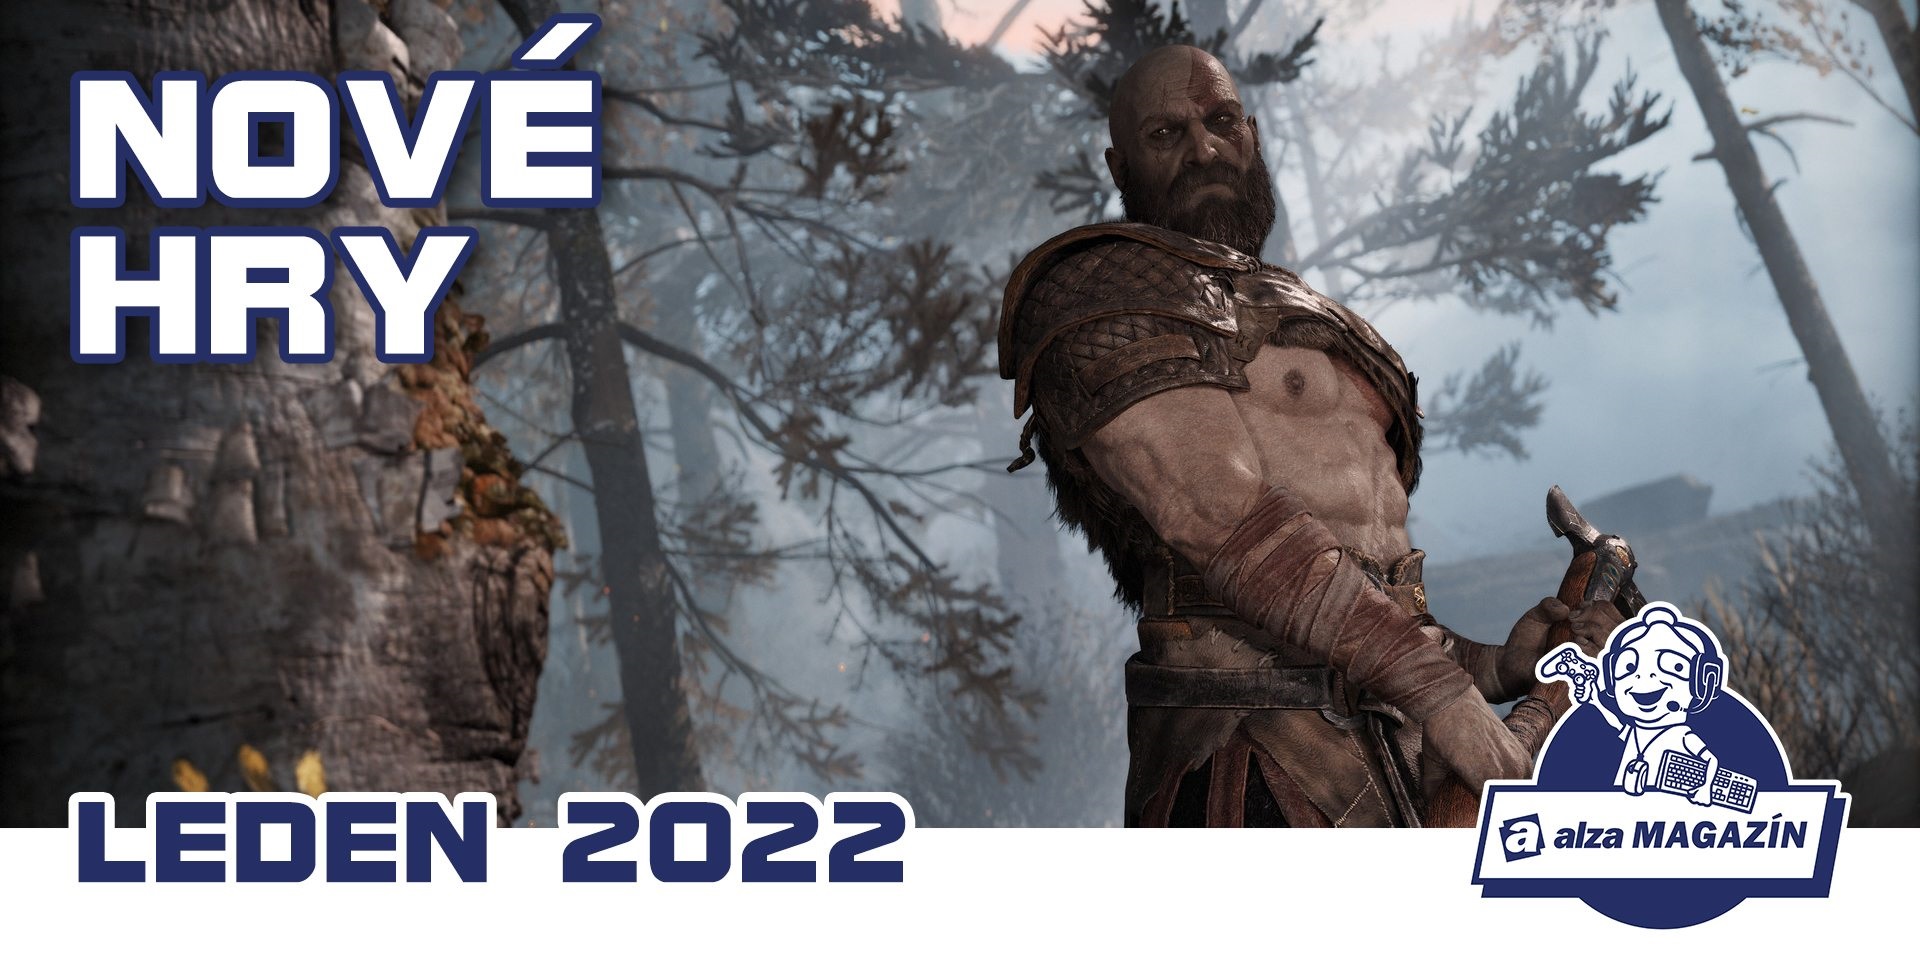 Nové hry: leden 2022 – God of War